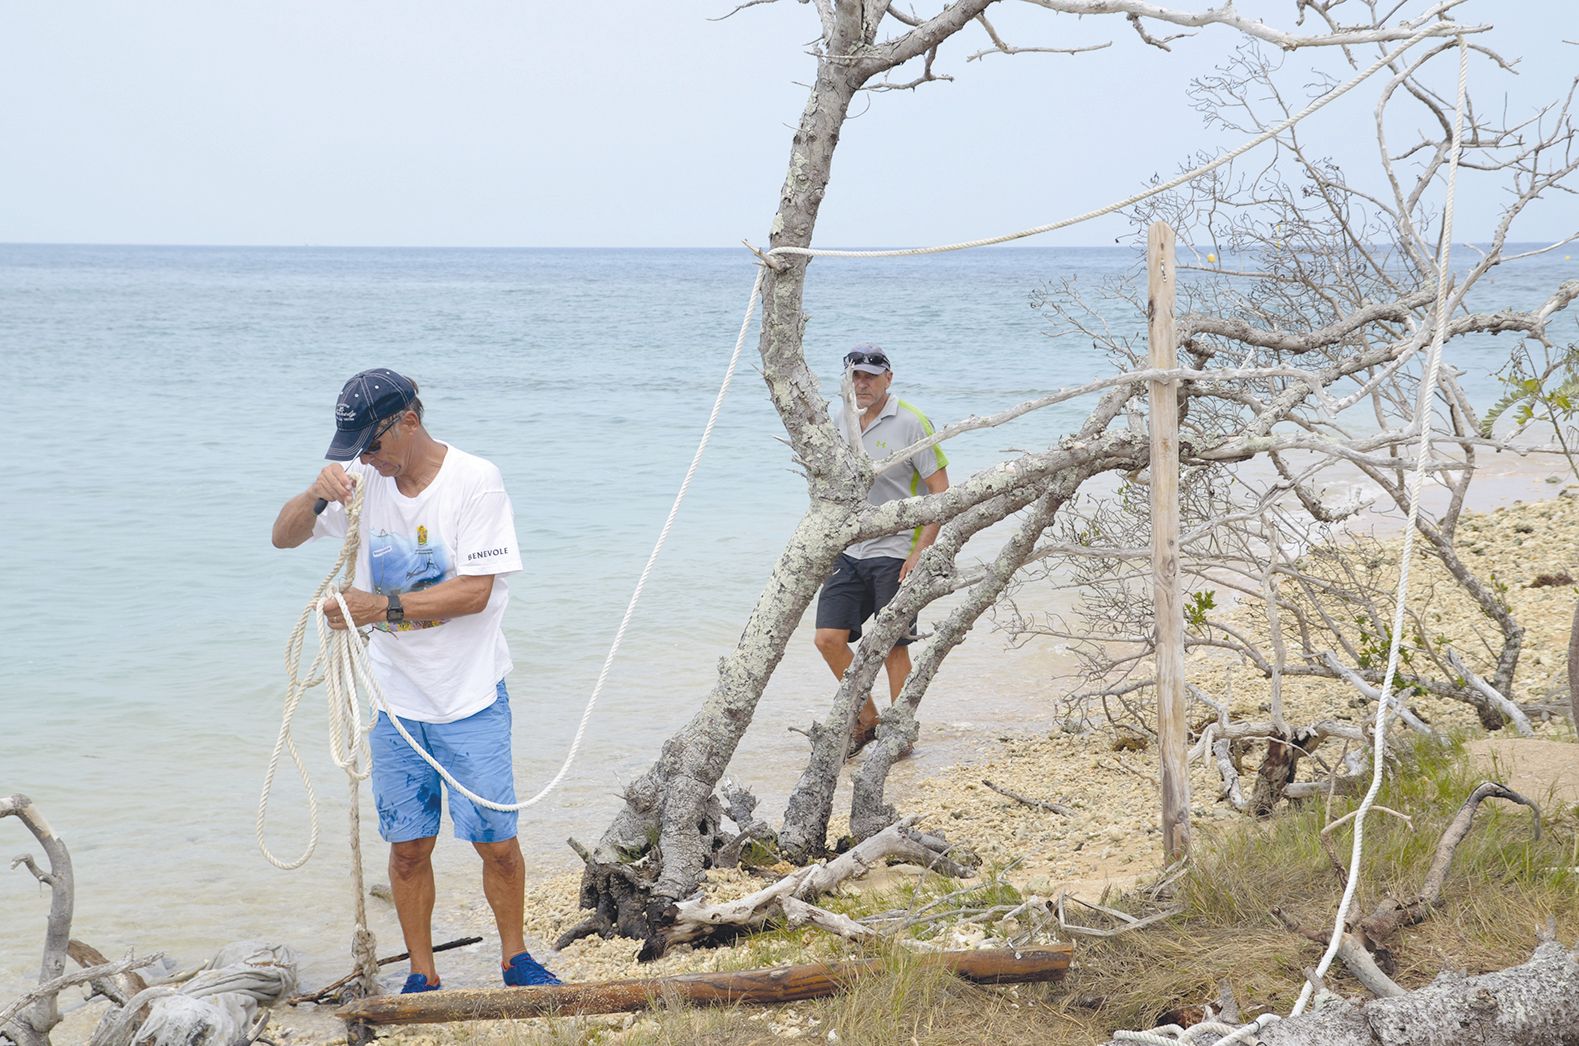 Une première équipe de volontaires dégageait cordes et poteaux. La mer ronge la zone  quotidiennement et au fil du temps les équipements se sont pris dans le corail et les arbres.